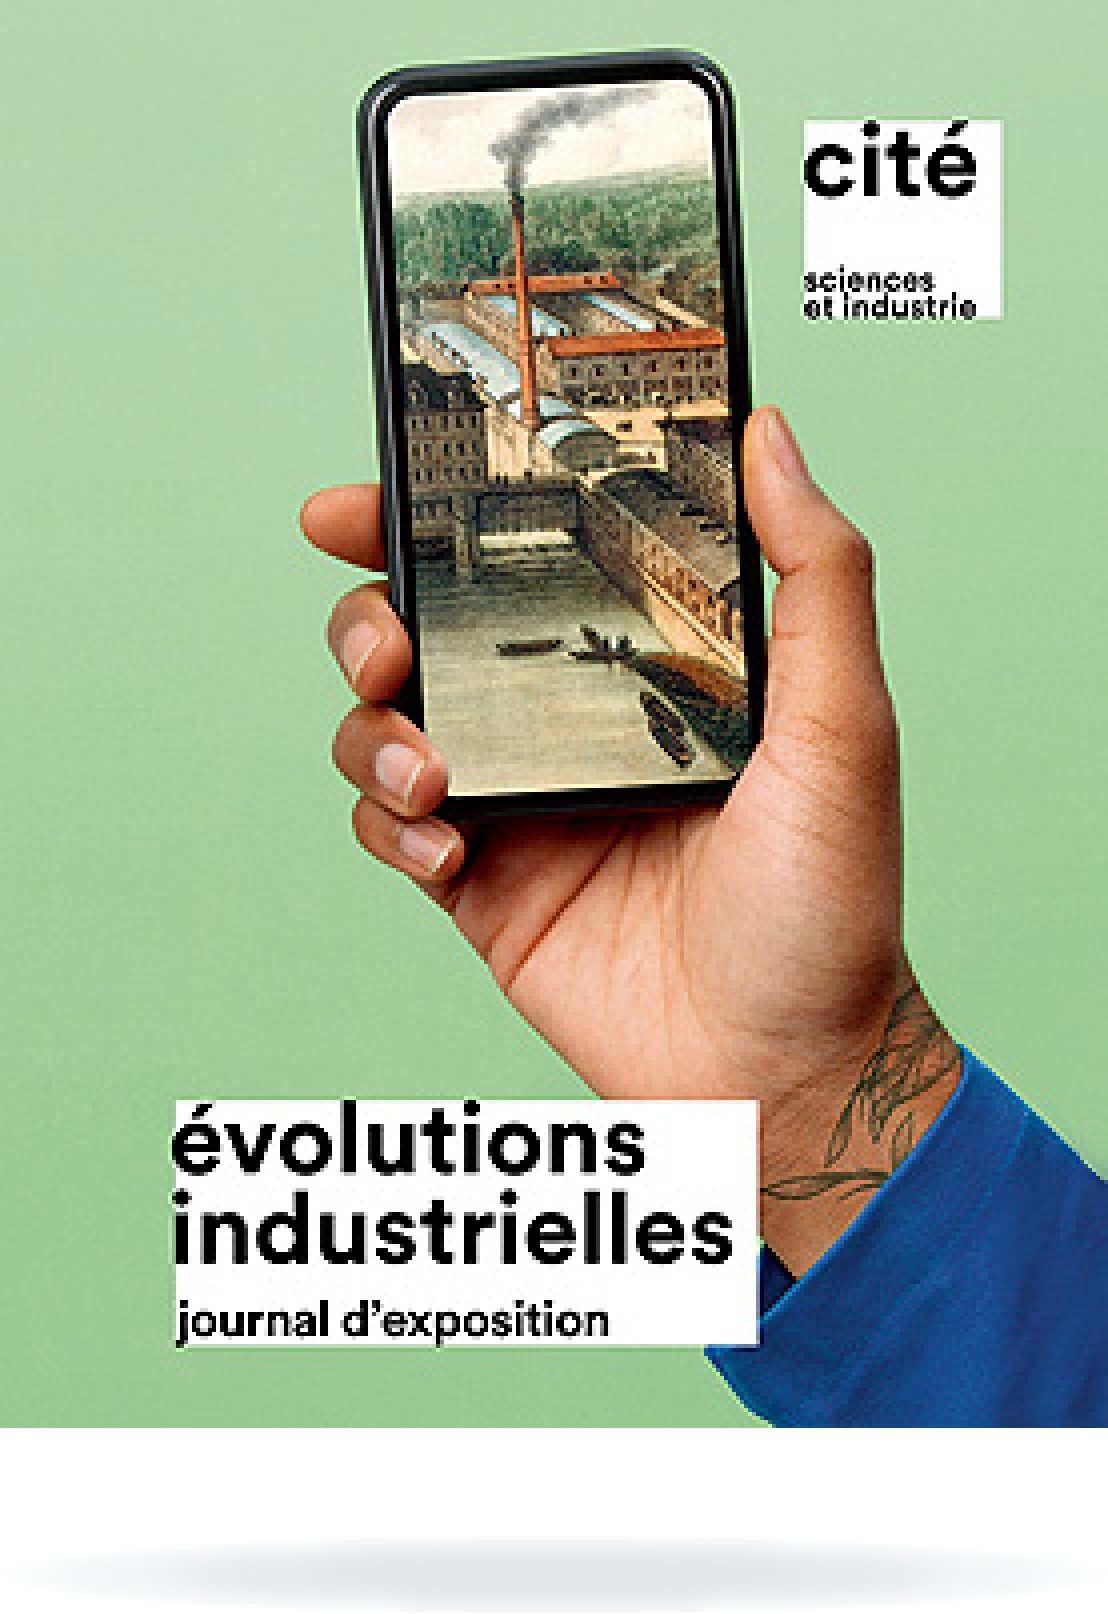 Révolutions ou évolutions, le journal de l’exposition évolutions industrielles (feuilleter un extrait - nouvelle fenêtre)